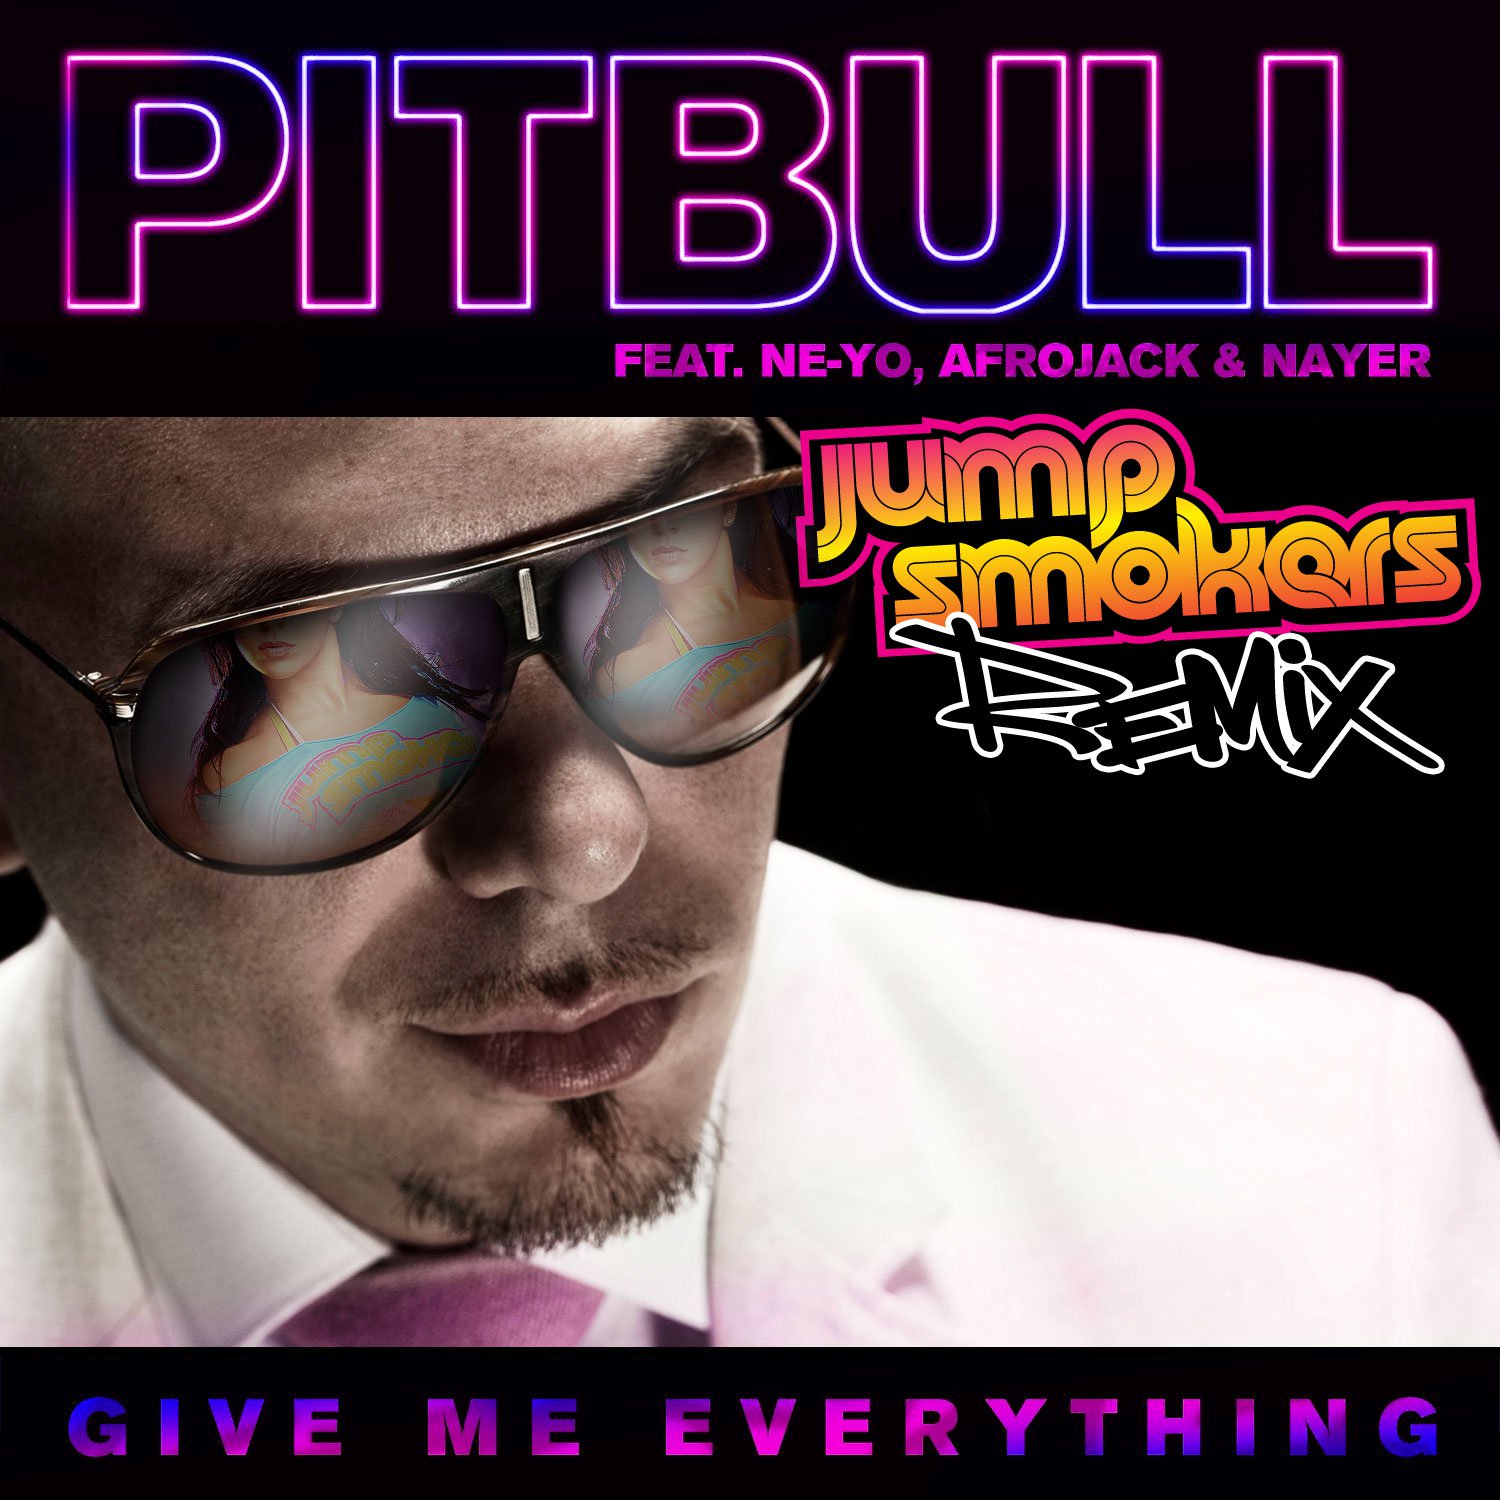 Ne yo everything. Afrojack Pitbull. Pitbull & ne-yo & Afrojack & Nayer - give me everything. Give me everything афроджек. Ne-yo, Pitbull give me everything.